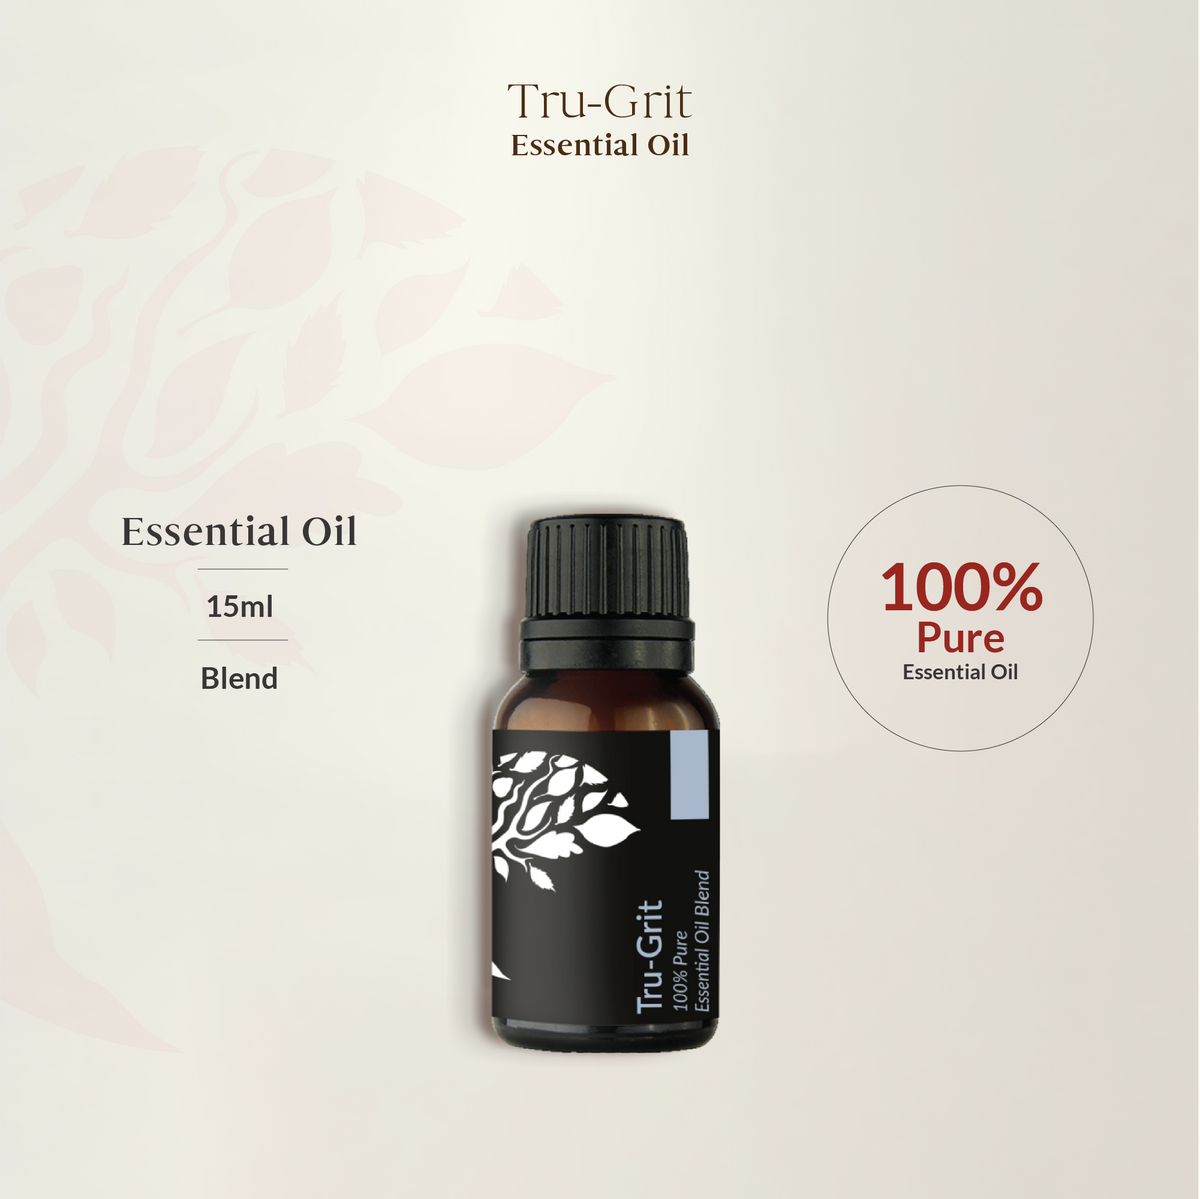 Tru-Grit Essential Oil Blend